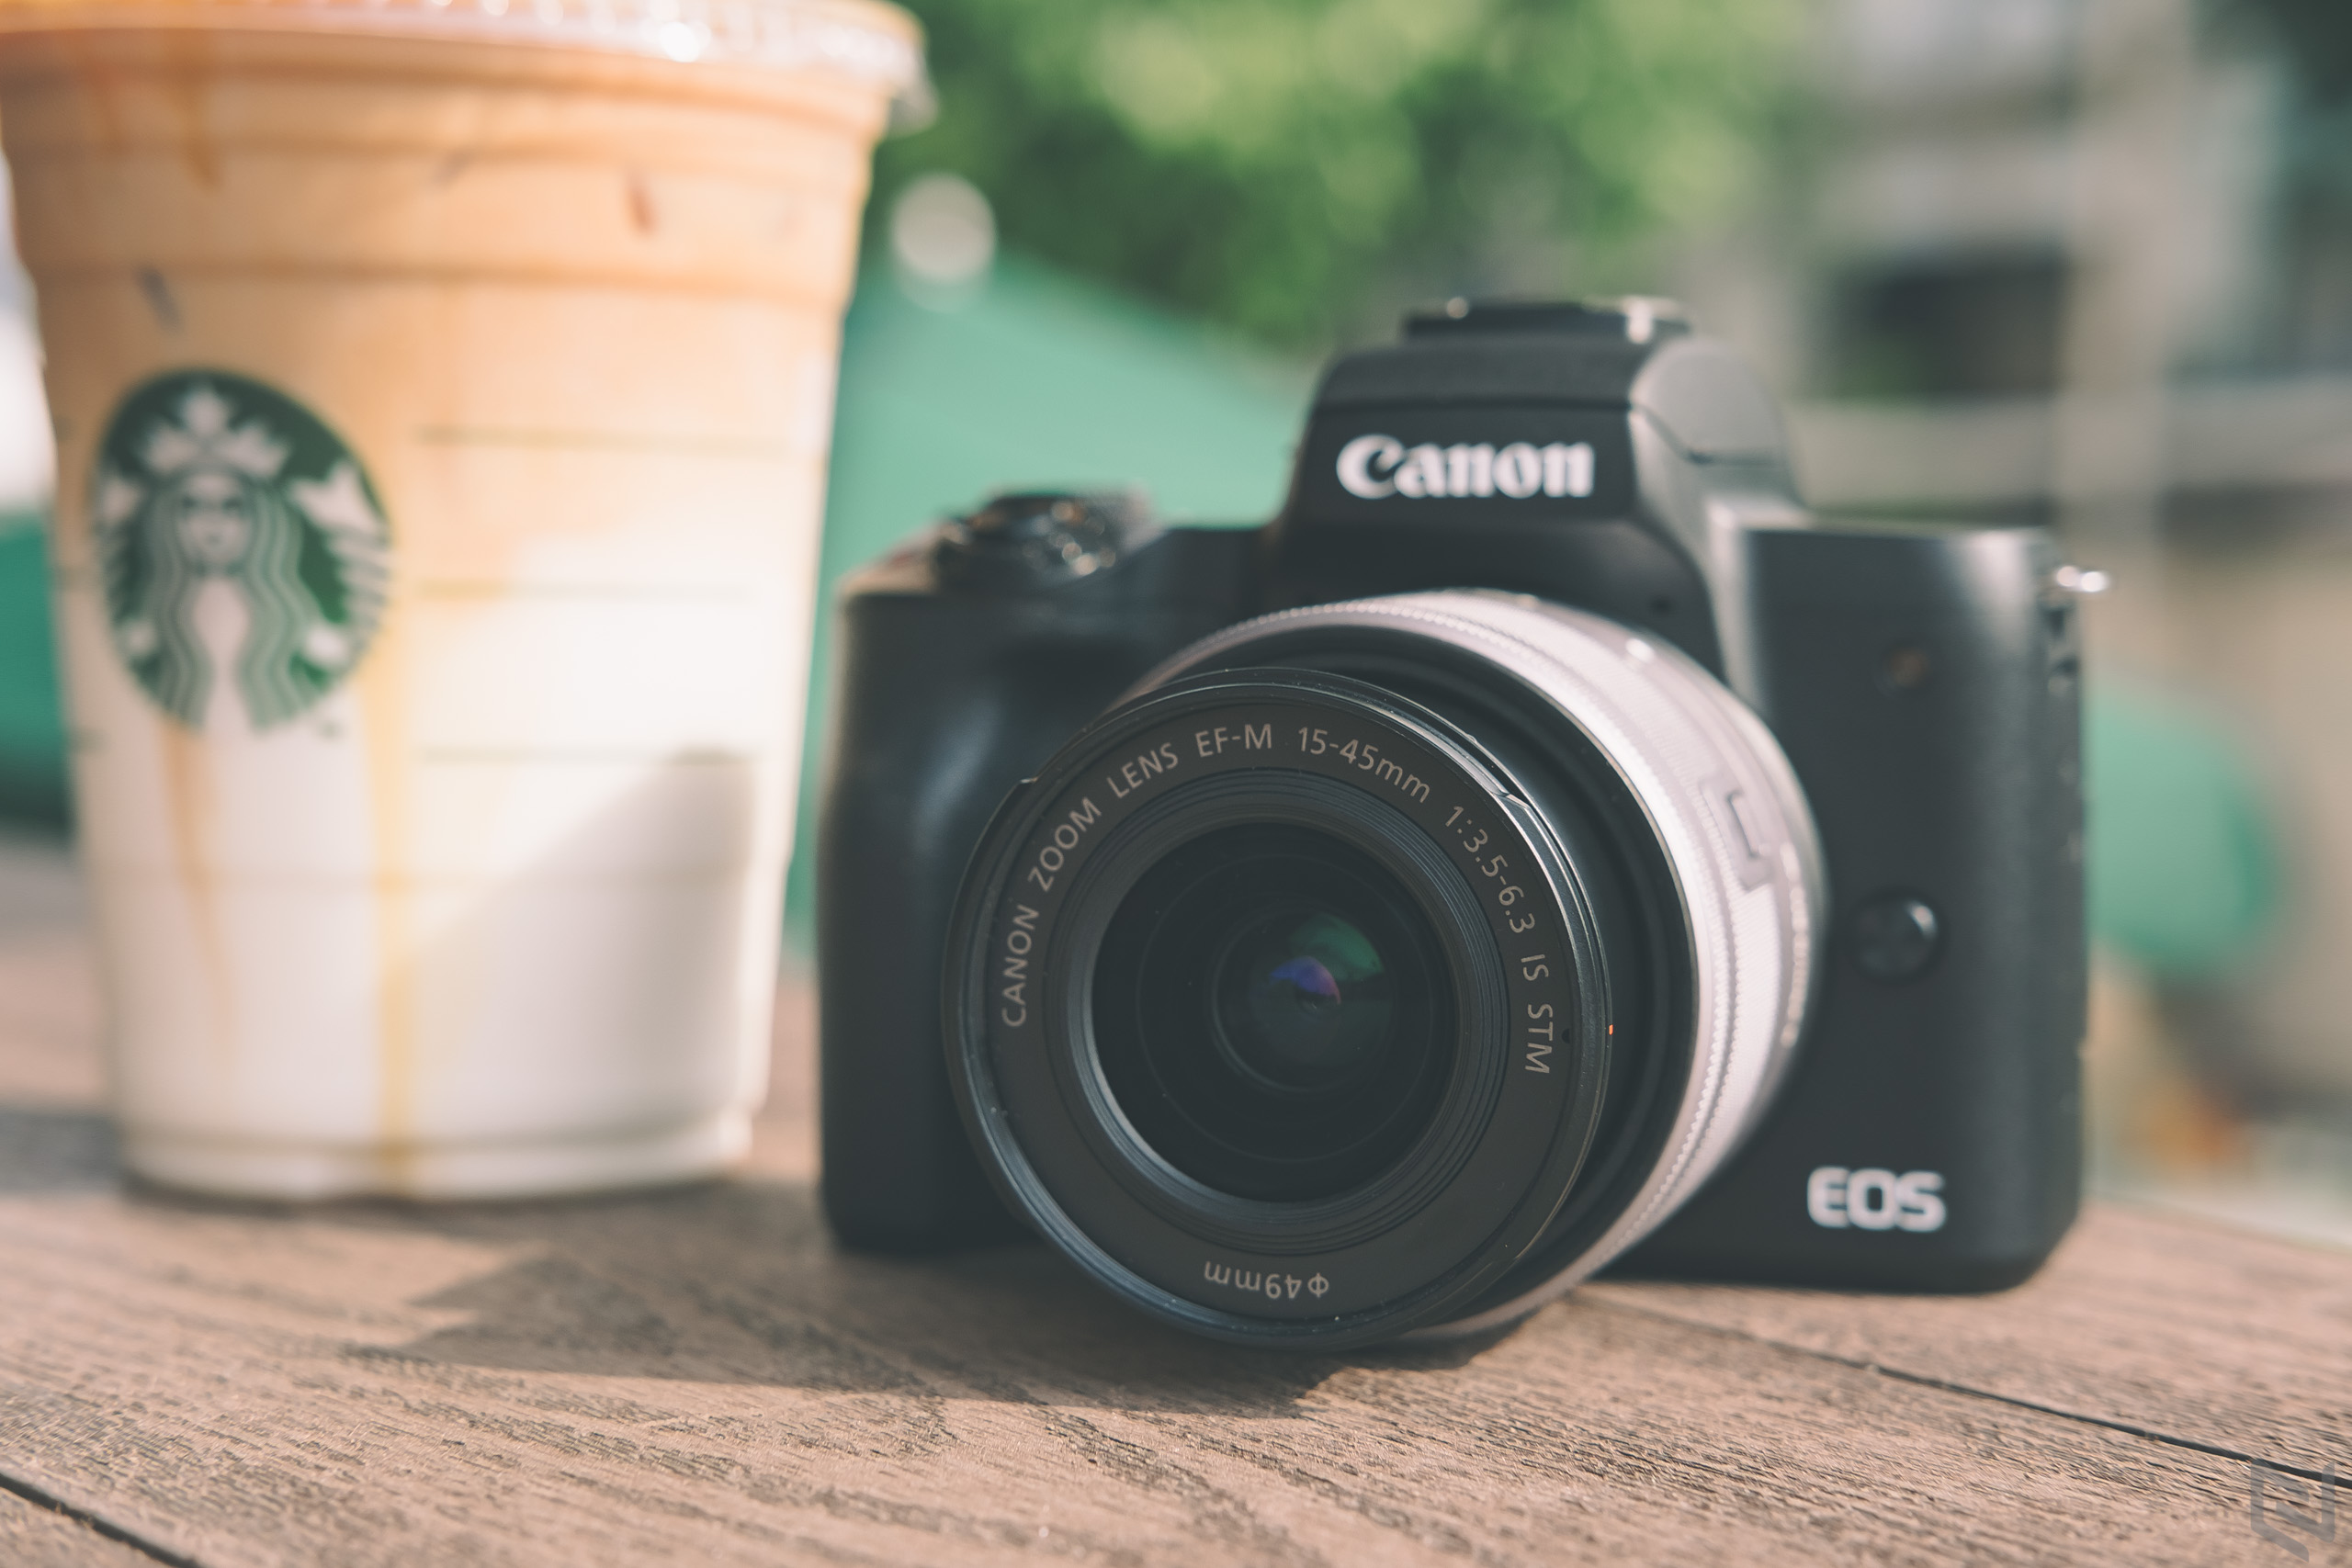 Canon EOS M50 Mark II và một chiếc máy ảnh Powershot sẽ được ra mắt trong tuần này